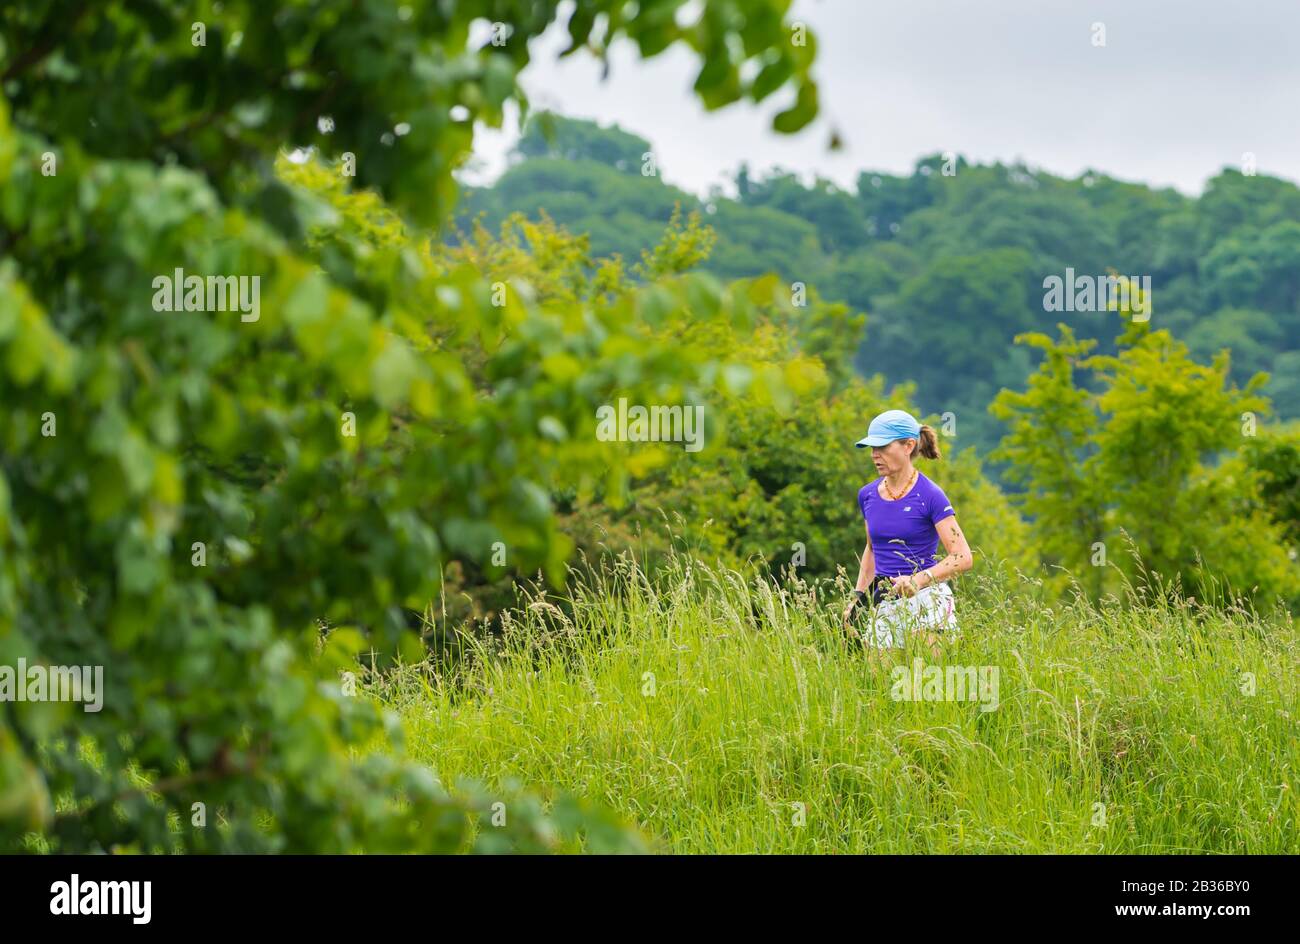 Frau, die sich als Teil eines gesunden Lebensstils fit hält, indem sie morgens joggen oder auf dem Land in Großbritannien laufen. Stockfoto